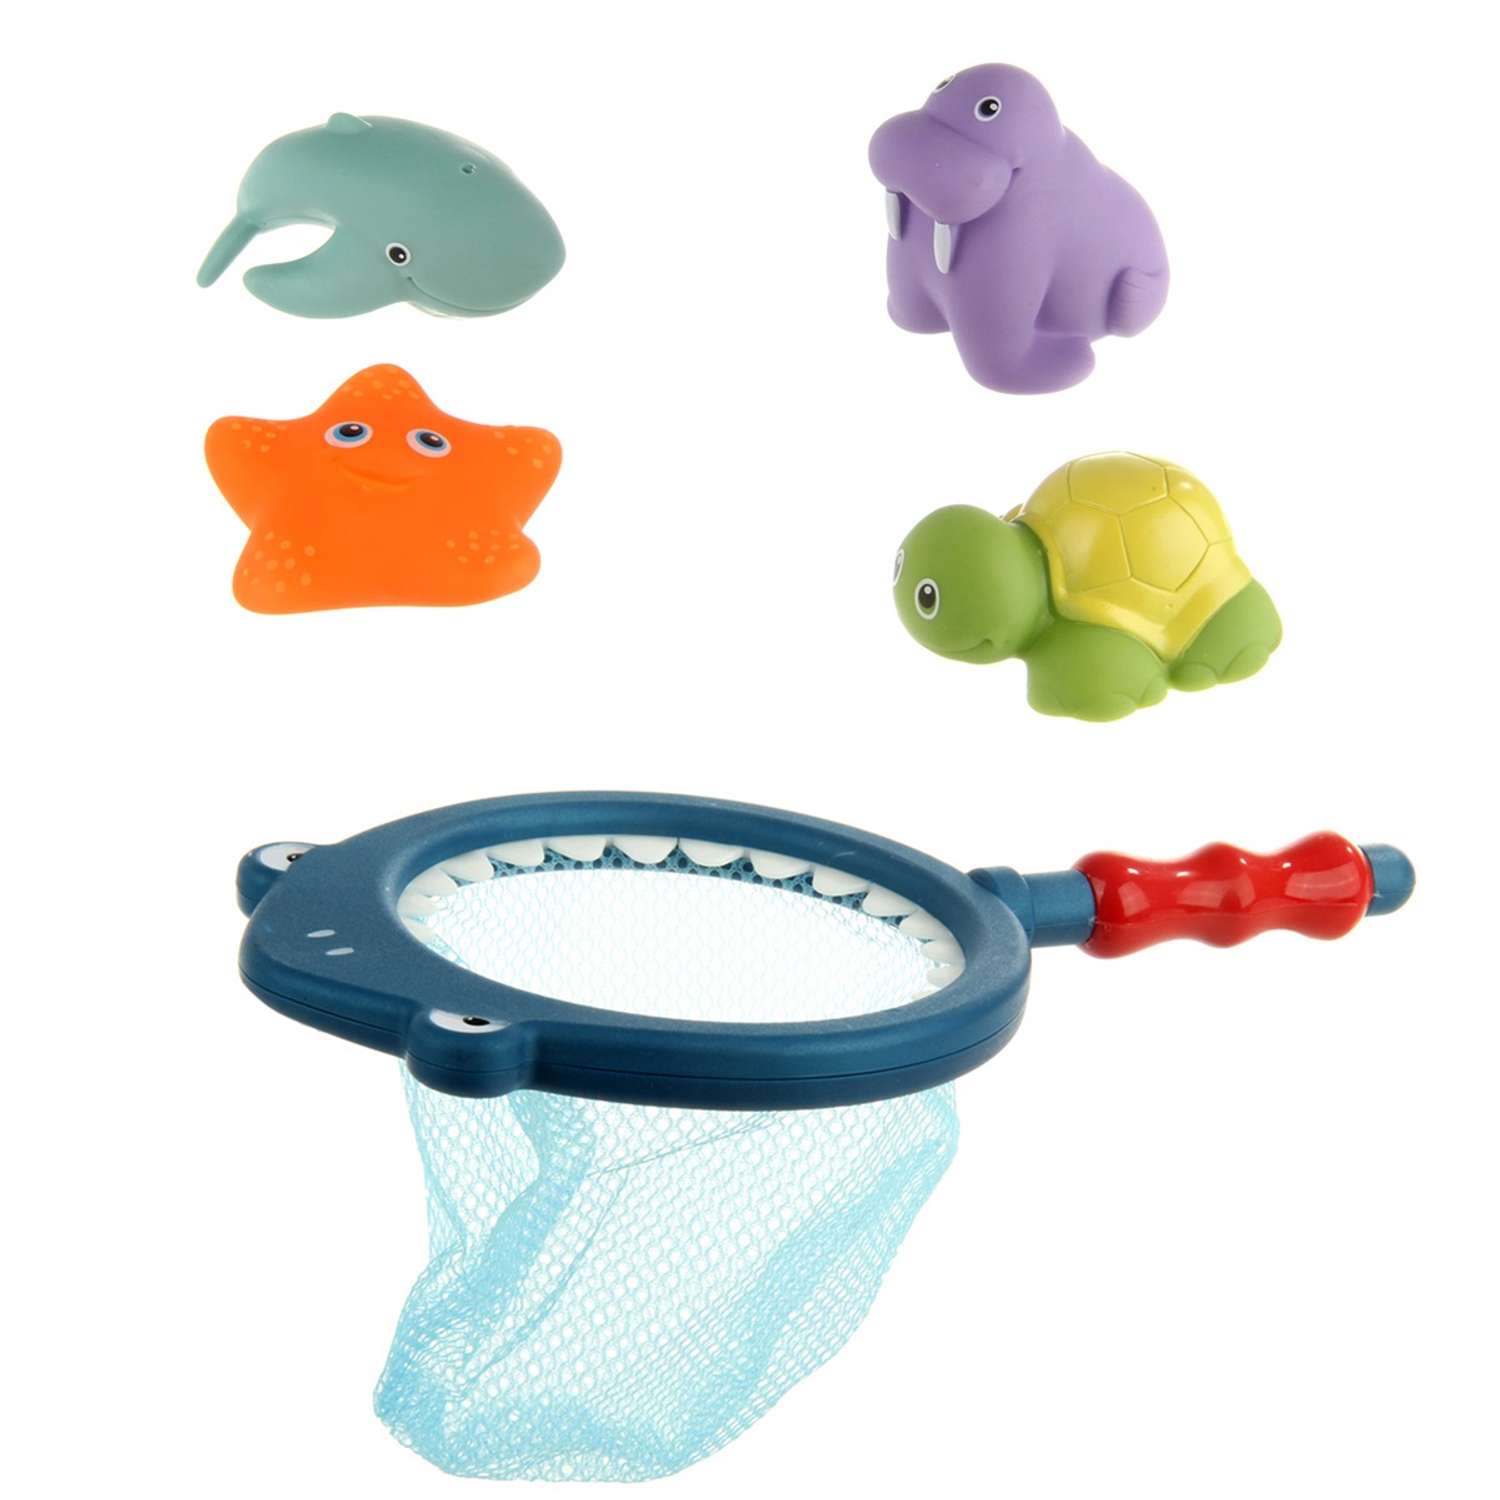 Игрушки для купания Ути Пути 4 предмета и сачок - фото 1